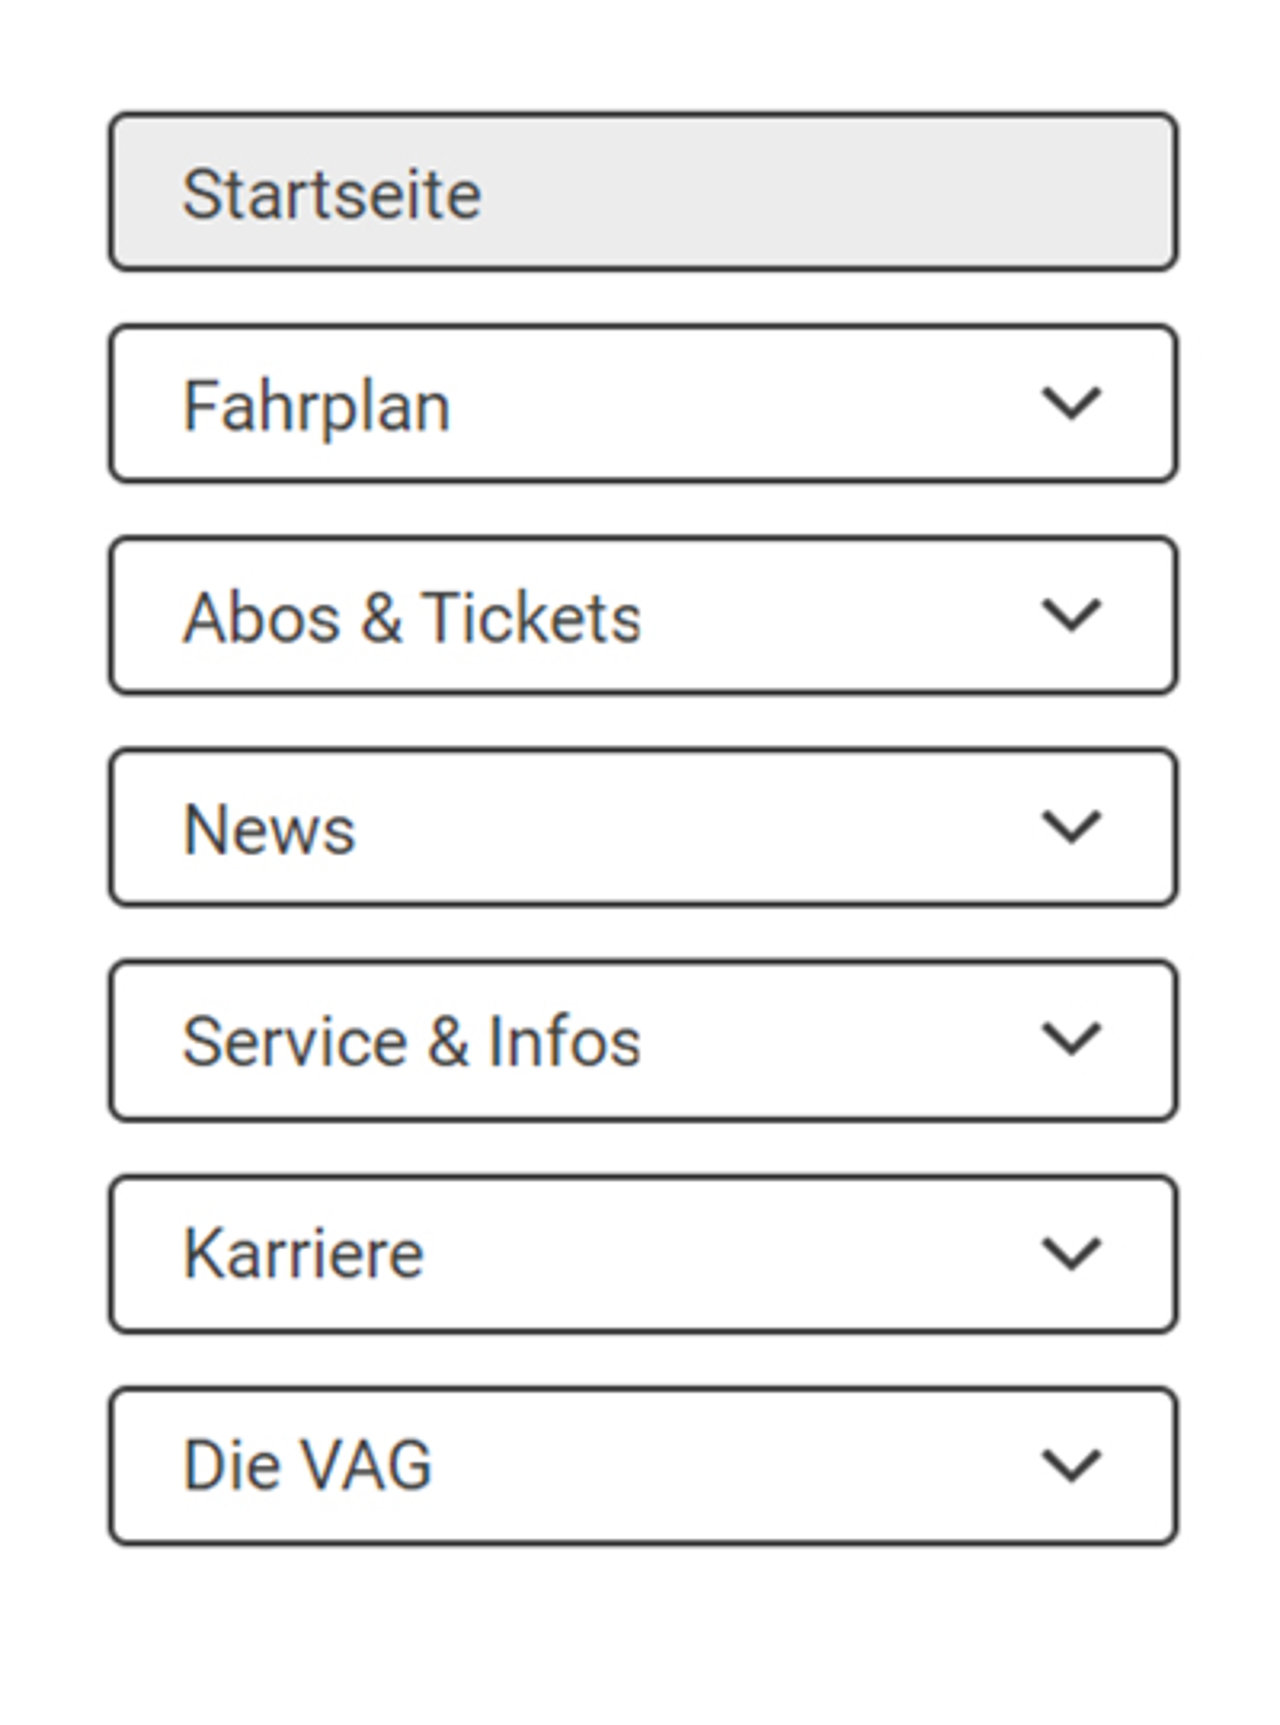 Bild: Darstellung der Hauptnavigationspunkte der Webseite vag-freiburg.de